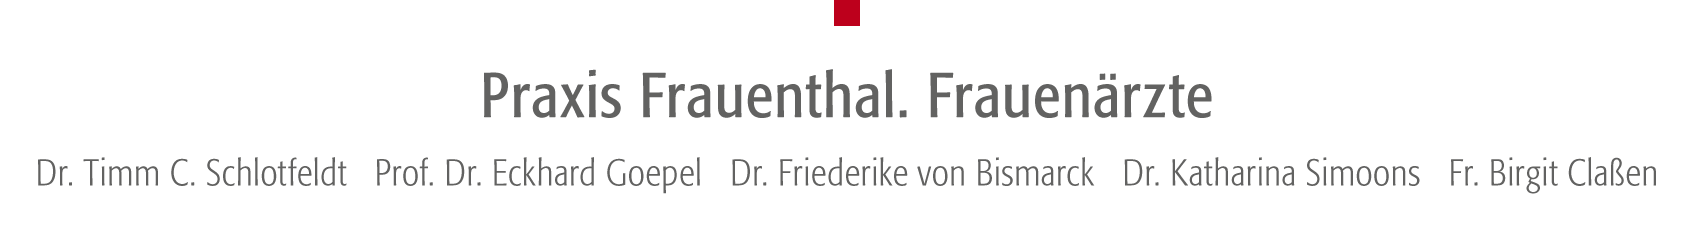 Startseite – Praxis Frauenthal - Dr. Timm C. Schlotfeldt, Prof. Dr. Eckhard Goepel, Dr. Friederike von Bismarck, Dr. Katharina Simoons, Fr. Birgit Claßen